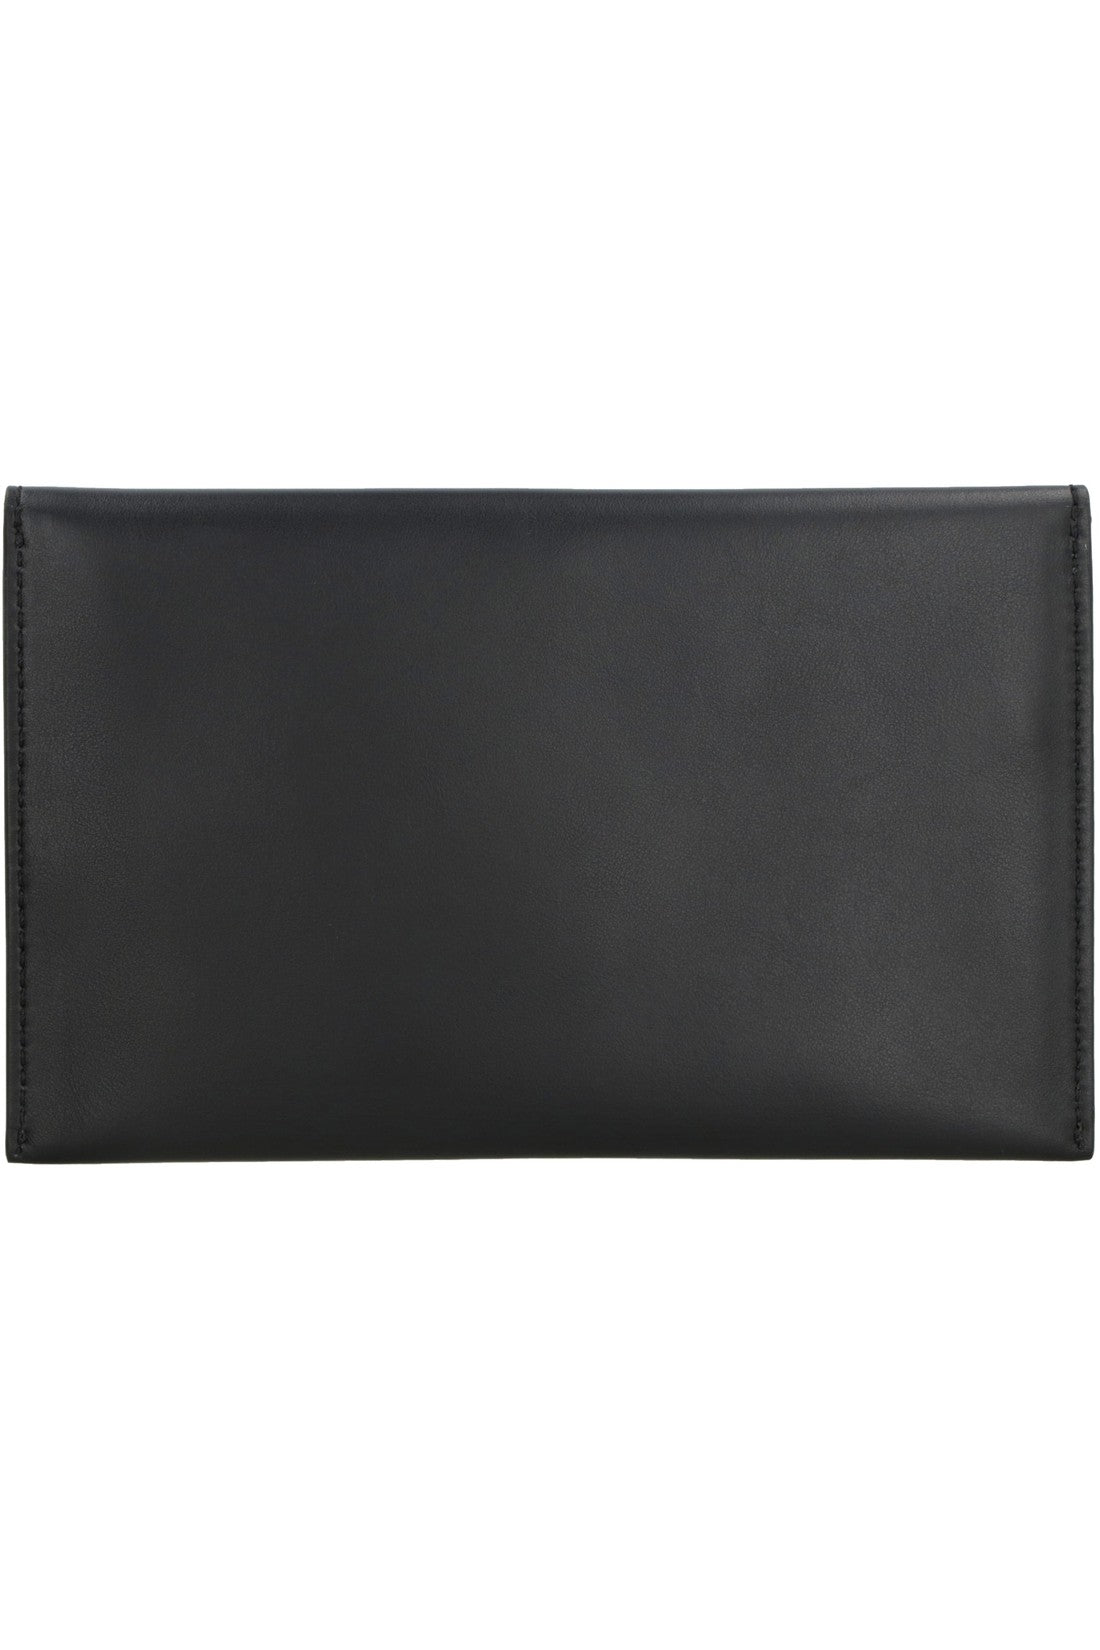 Etro-OUTLET-SALE-Leather flat pouch-ARCHIVIST